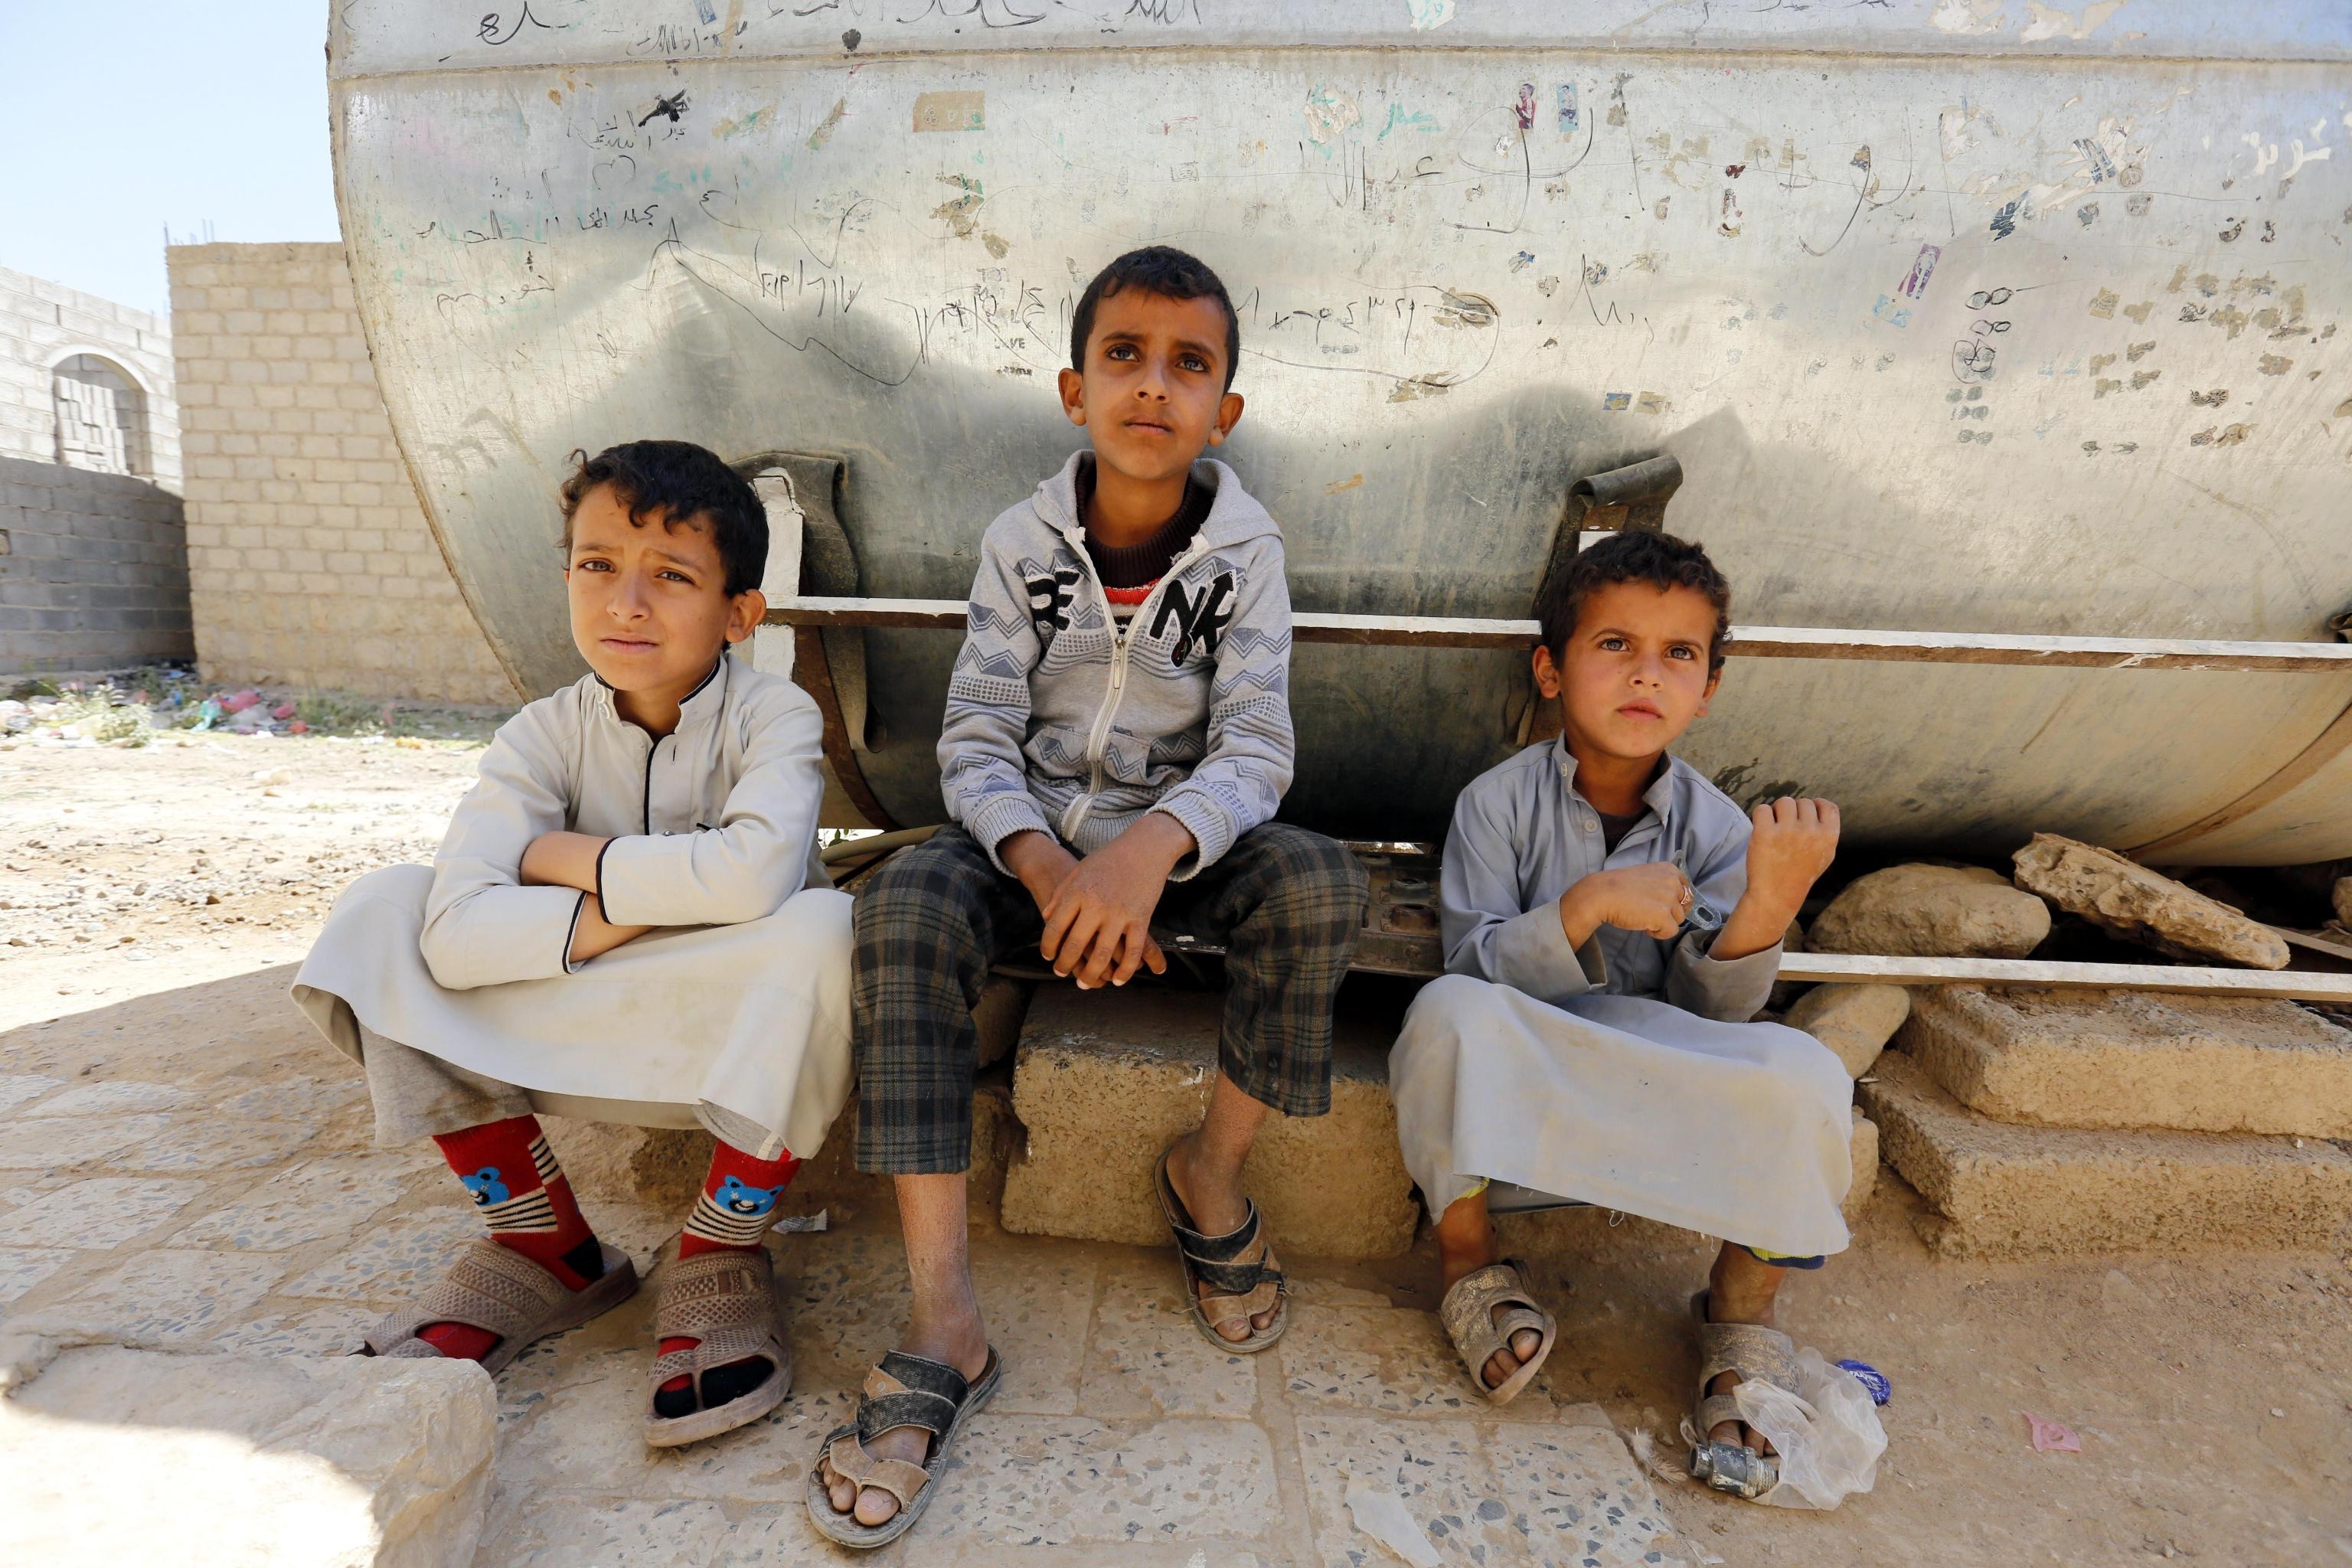 Bambini seduti accanto al serbatoio d'acqua contaminato.